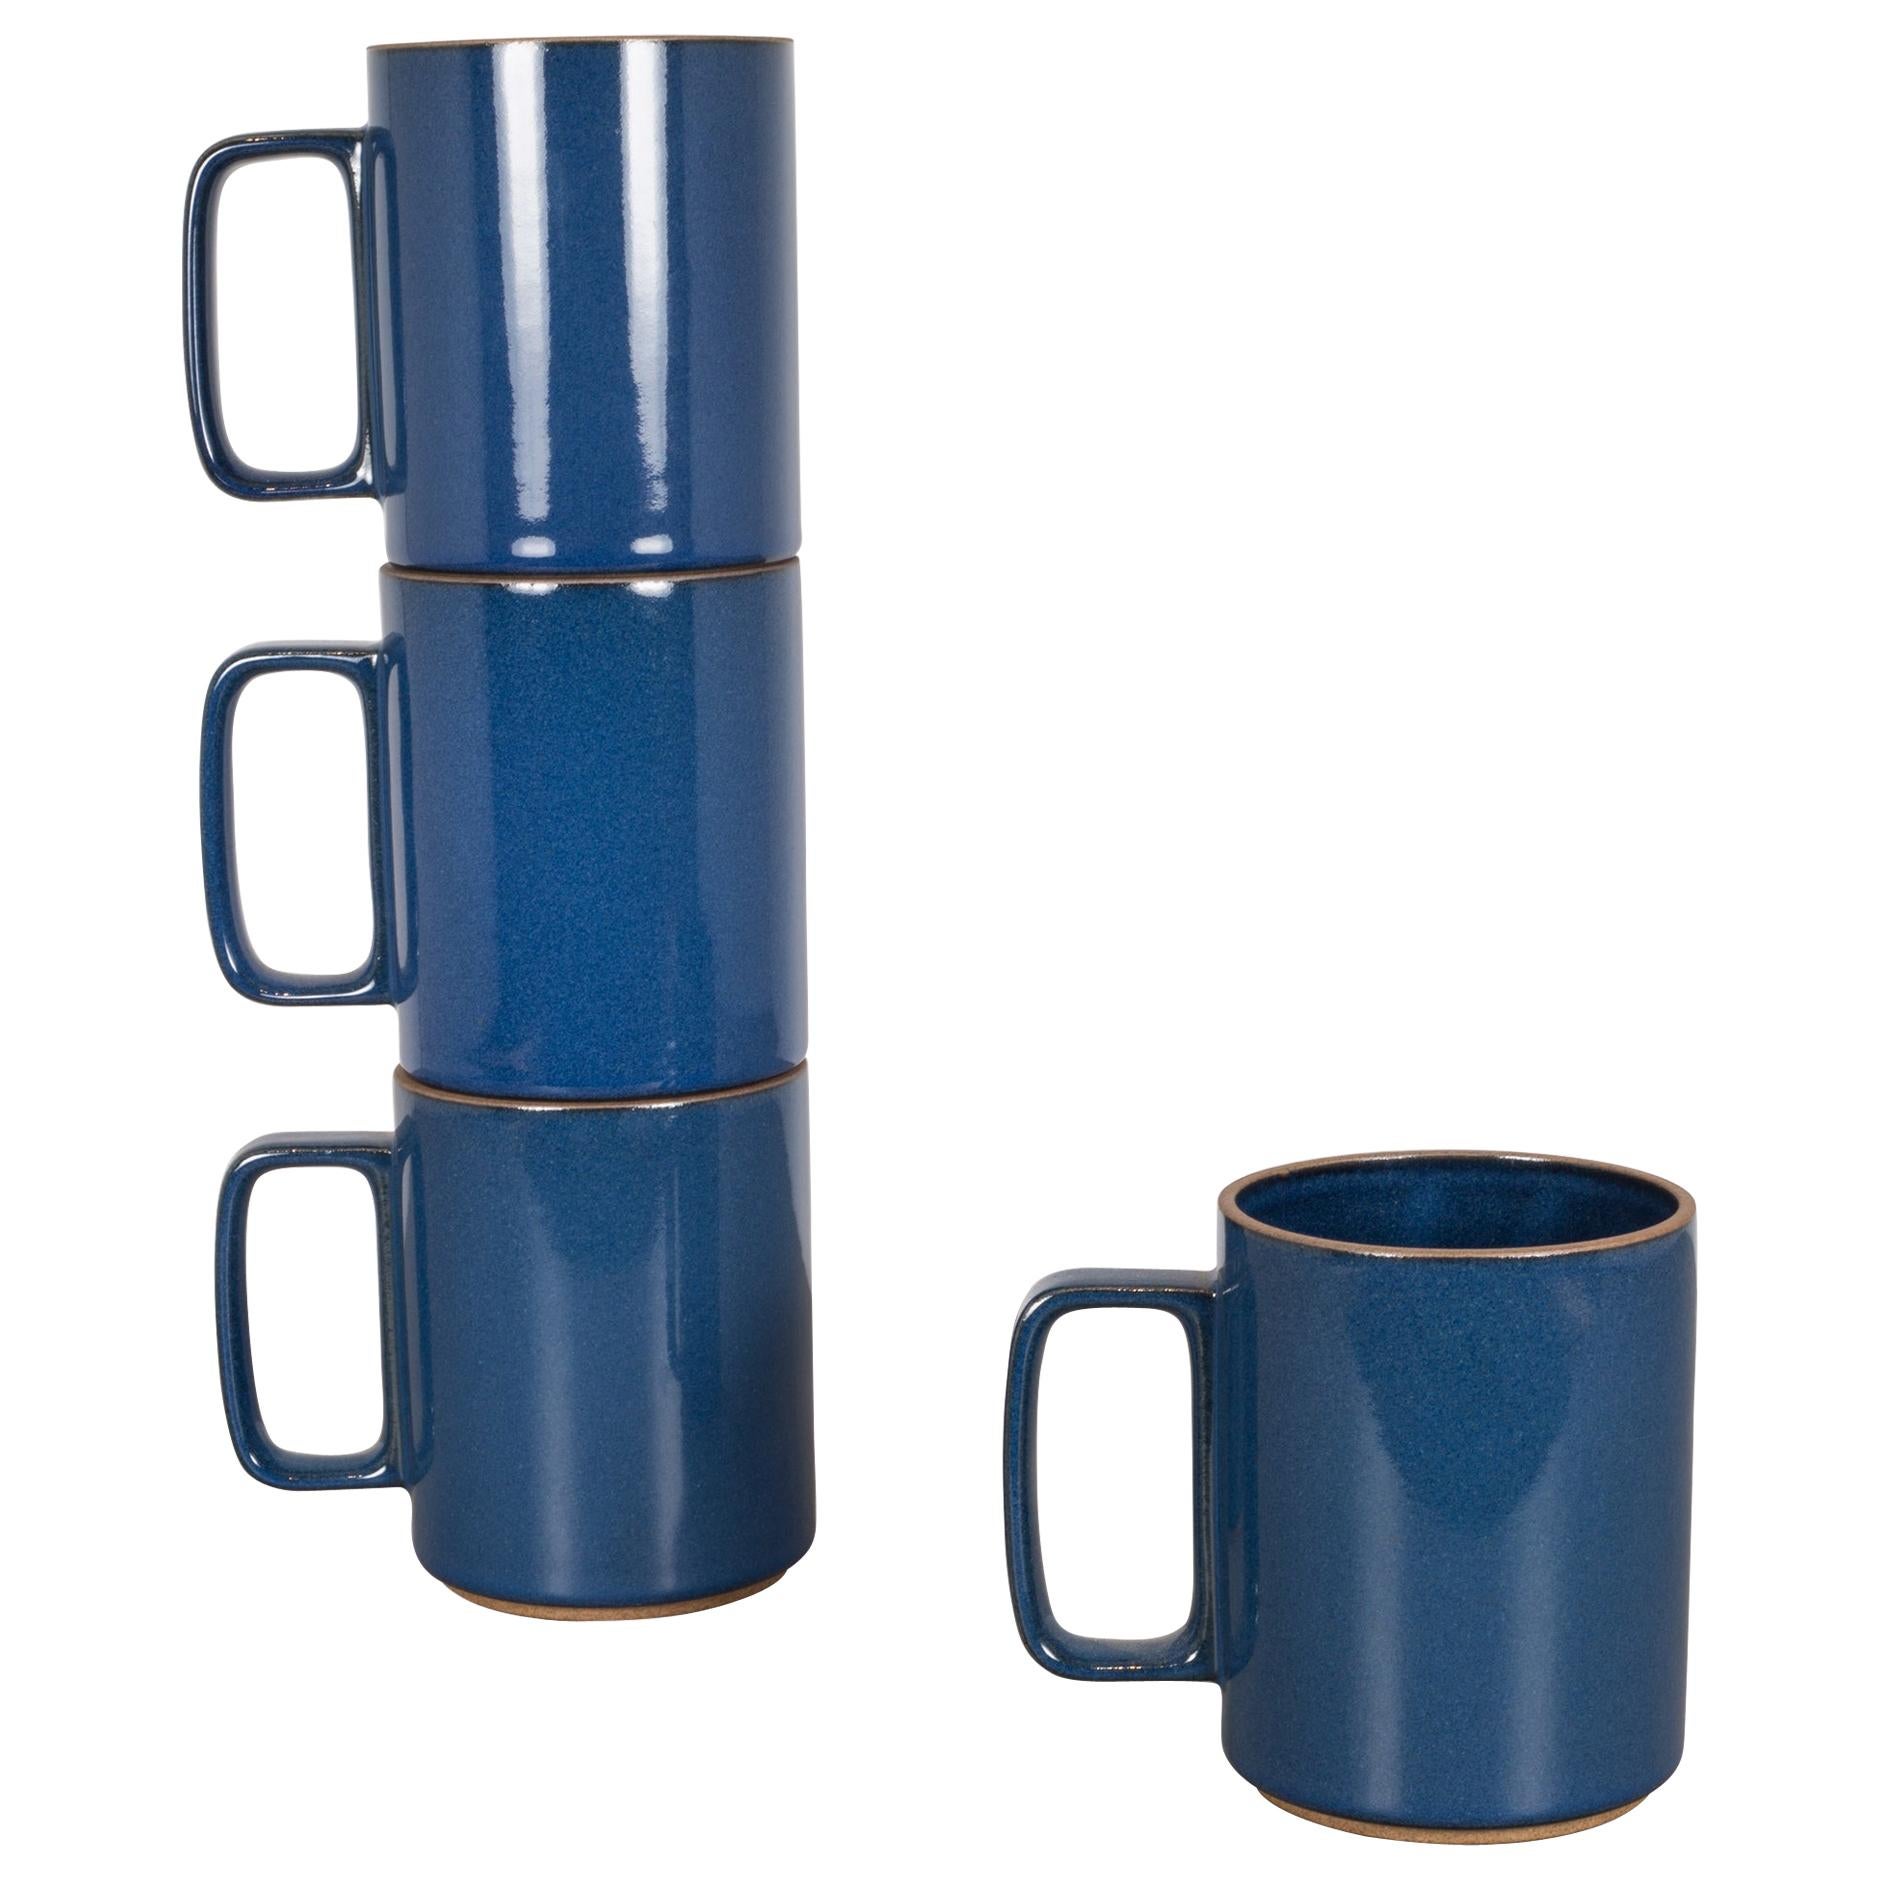 https://a.1stdibscdn.com/set-of-hasami-porcelain-mugs-gloss-blue-for-sale/1121189/f_164008521570716599292/16400852_master.jpg